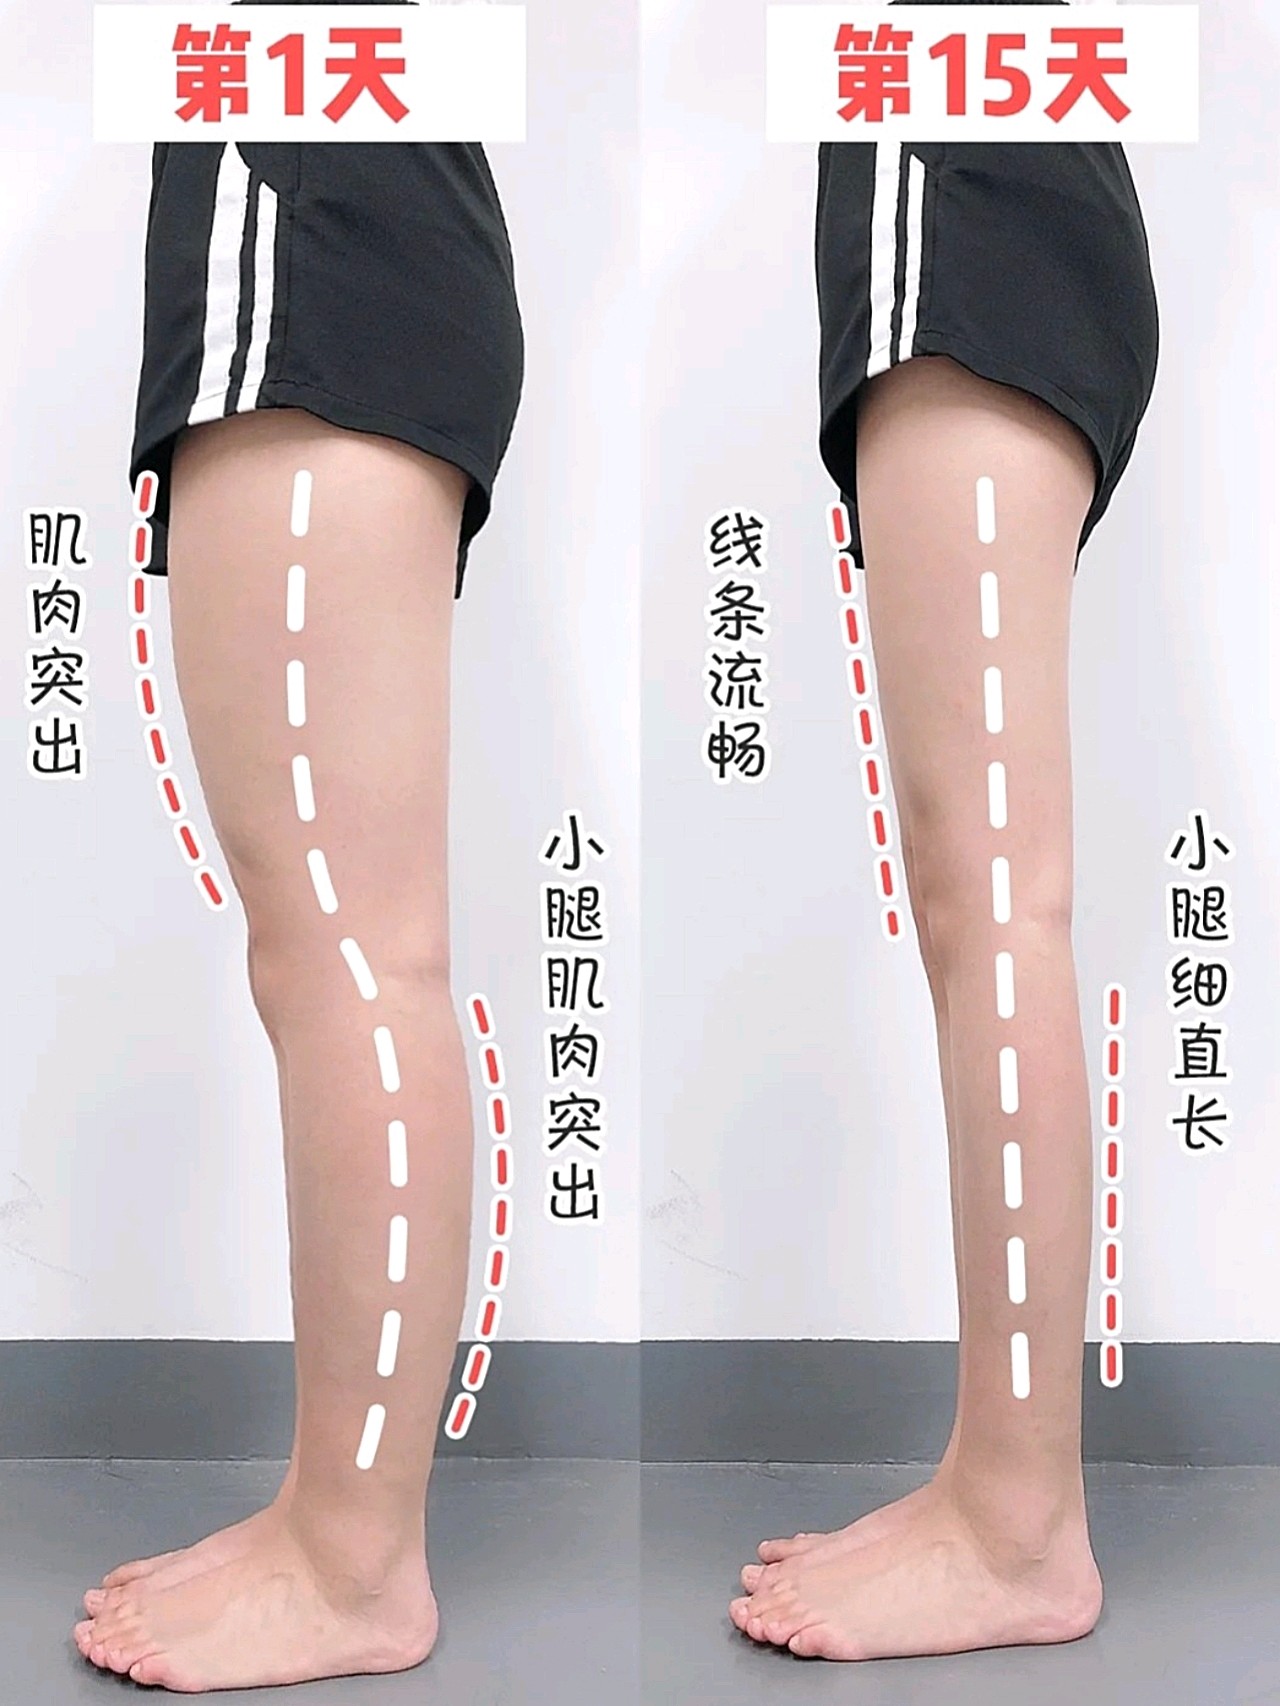 21天瘦成筷子腿的简单方法!